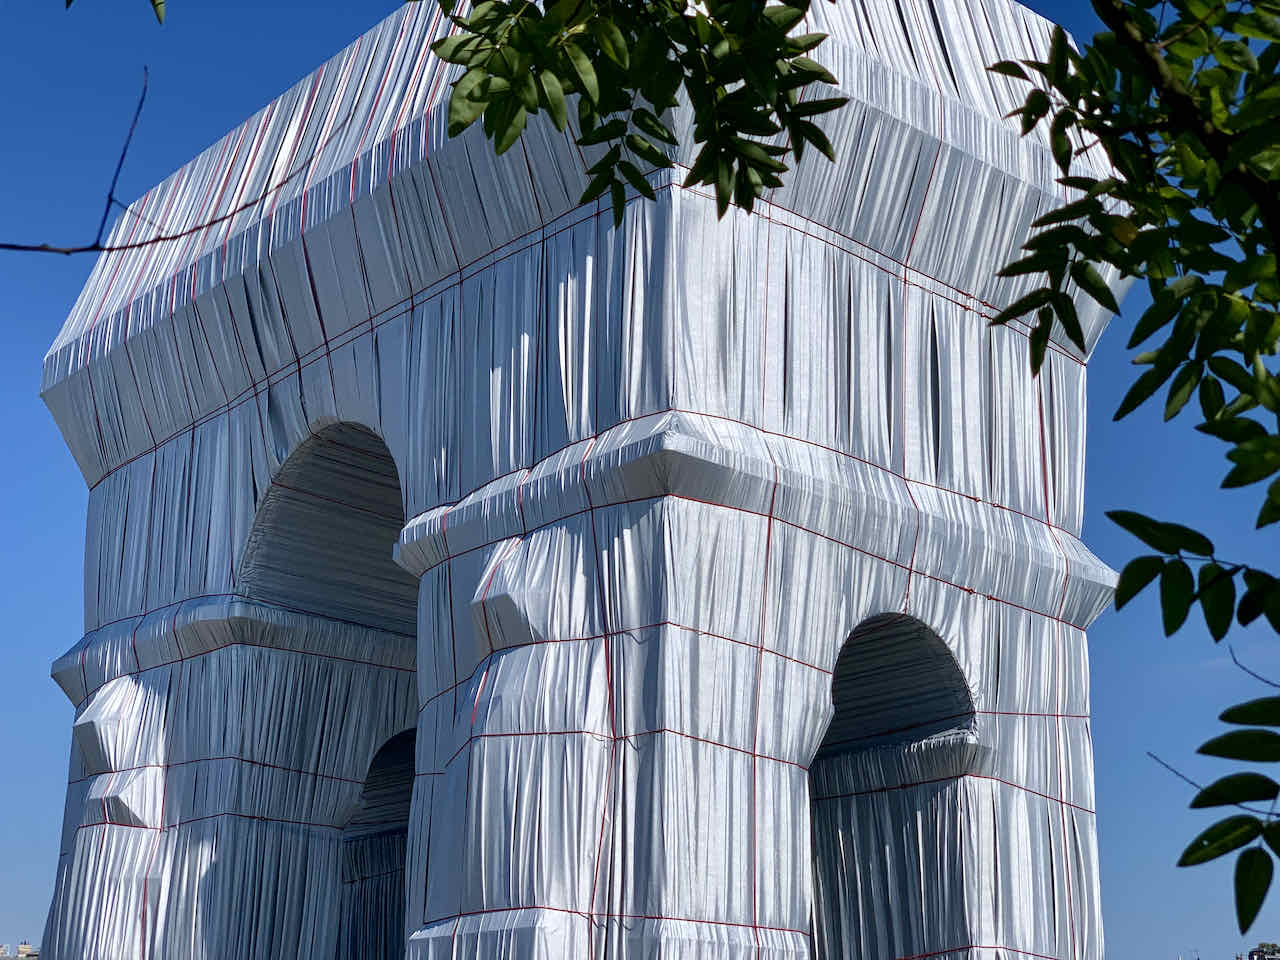 Verhüllter Triumphbogen in Paris von Christo and Jeanne-Claude, 2021